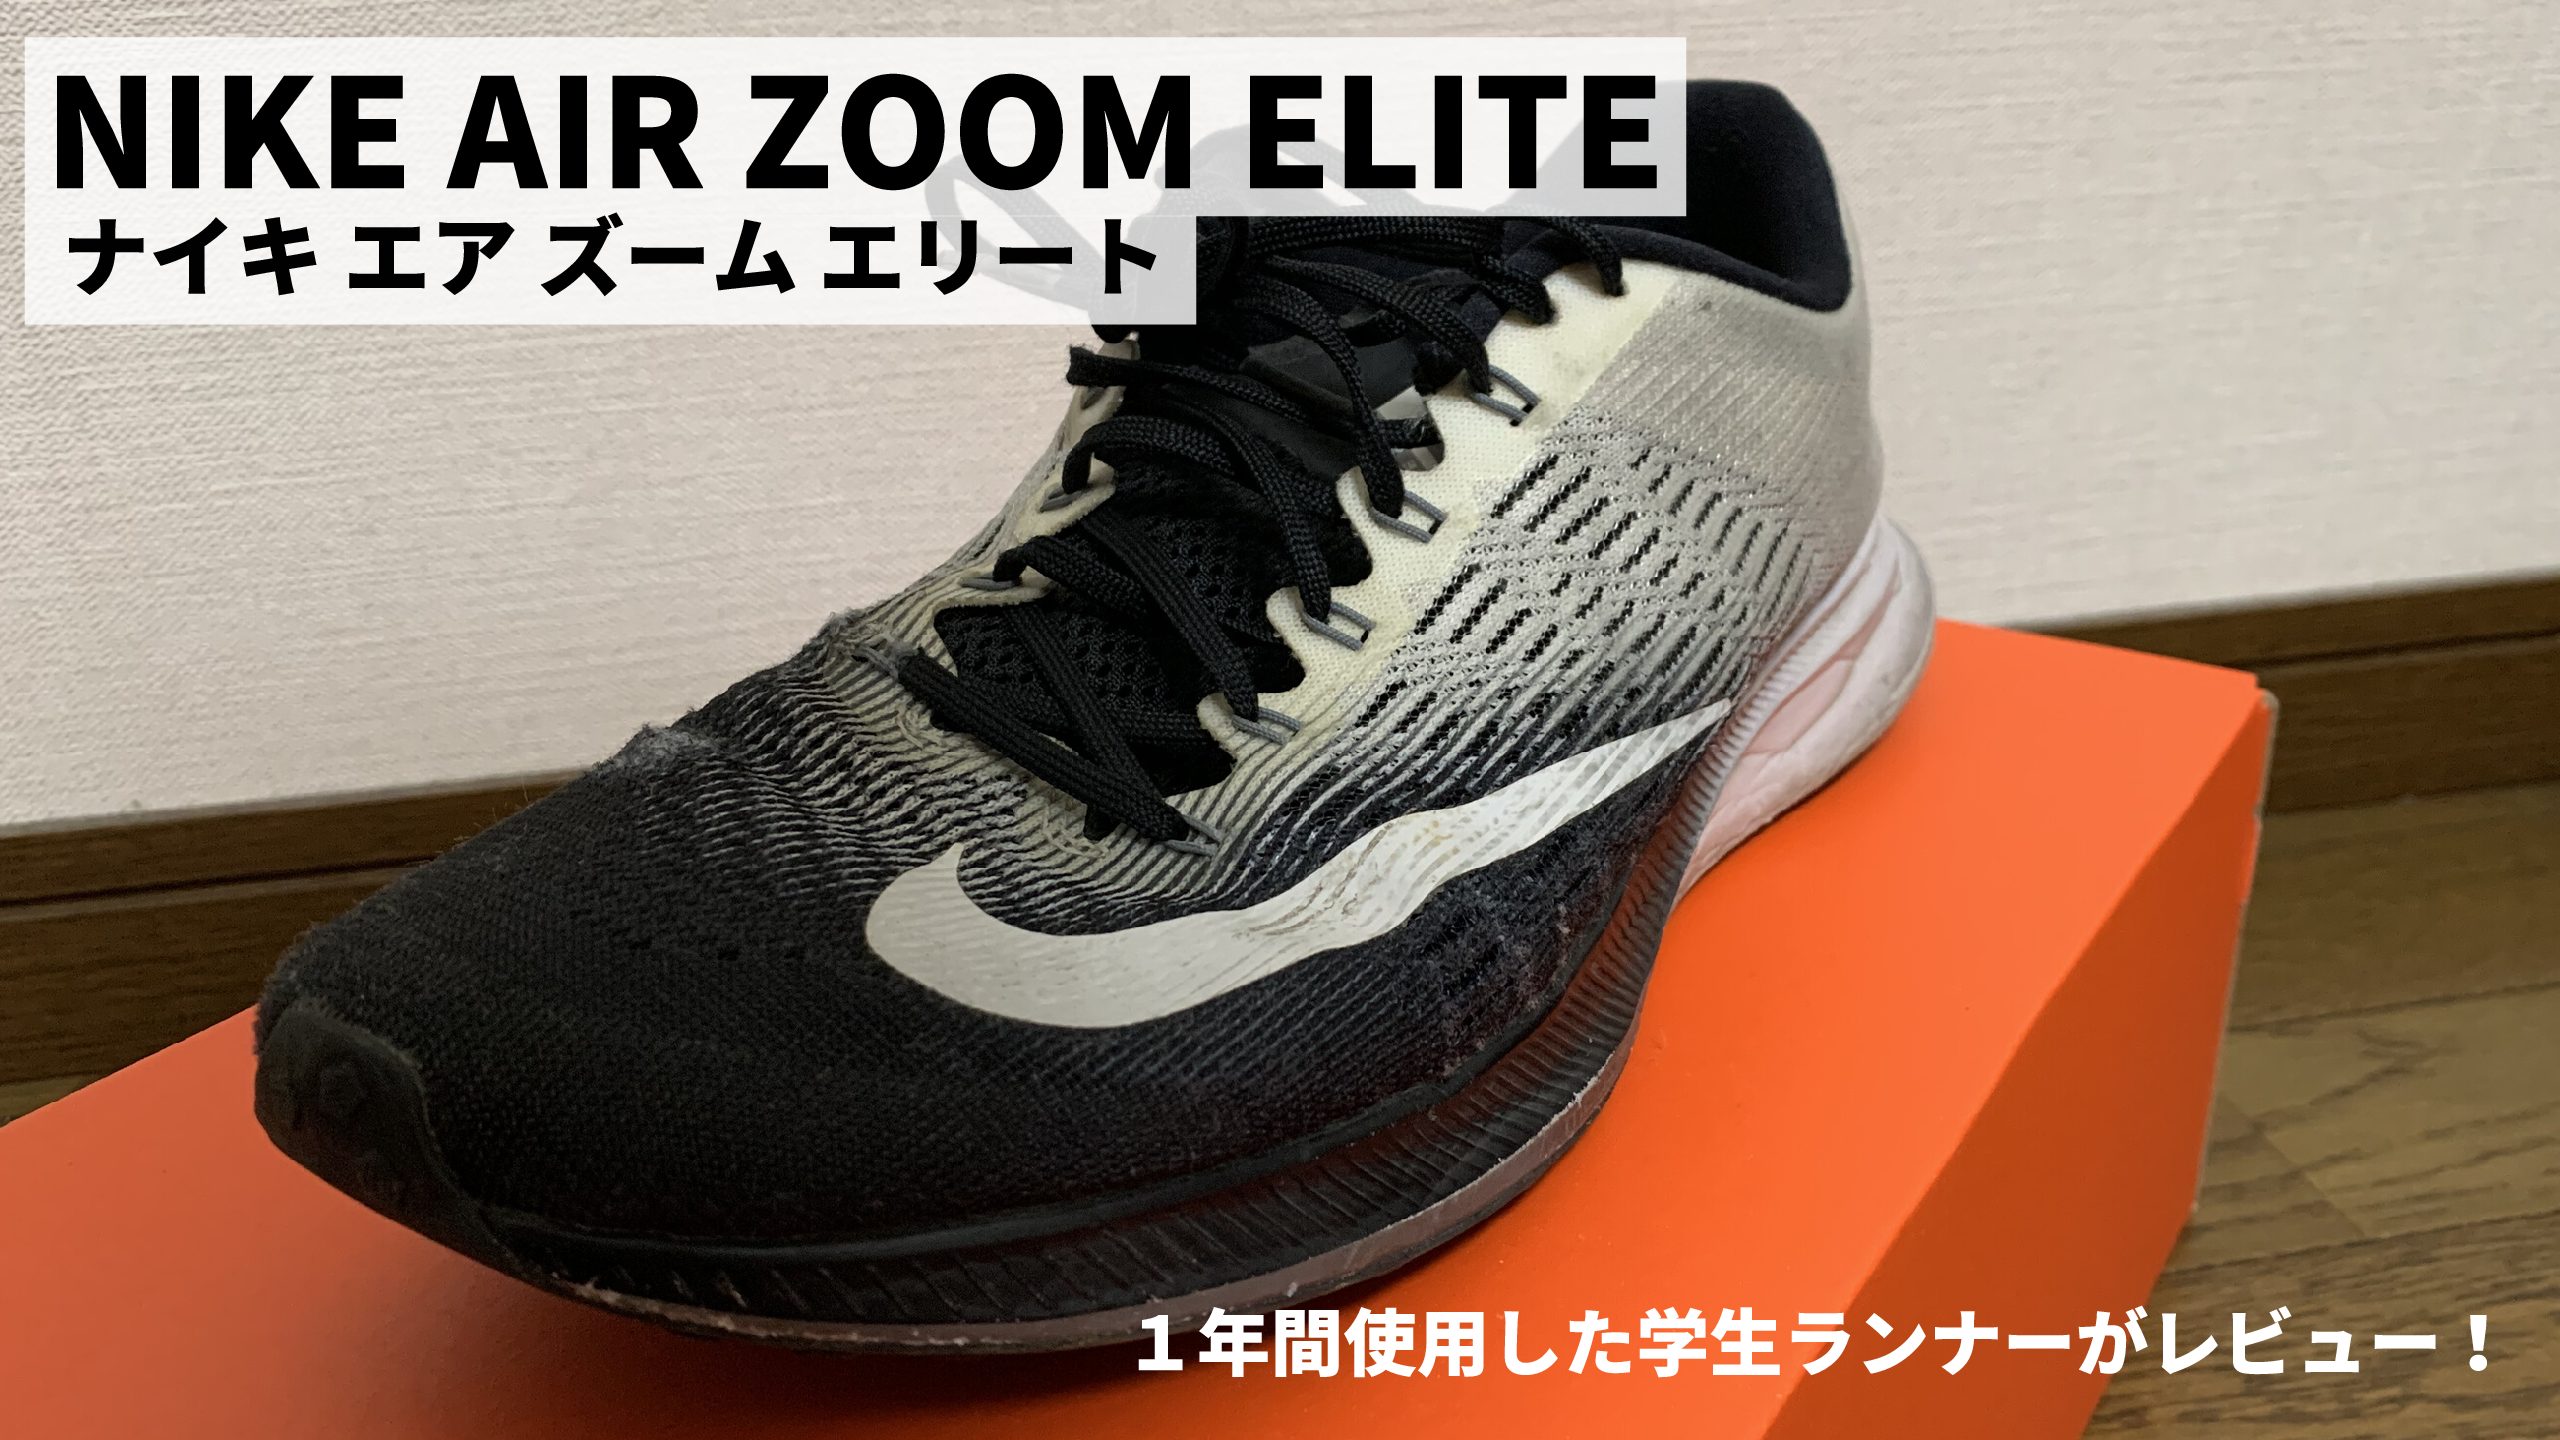 ナイキ エア ズーム エリート9 Nike Air Zoom Elite9 レビュー 重量から感想まで1年間使用した学生ランナーが評価します 陸上競技歴10年以上のランナーによるブログrunninglife